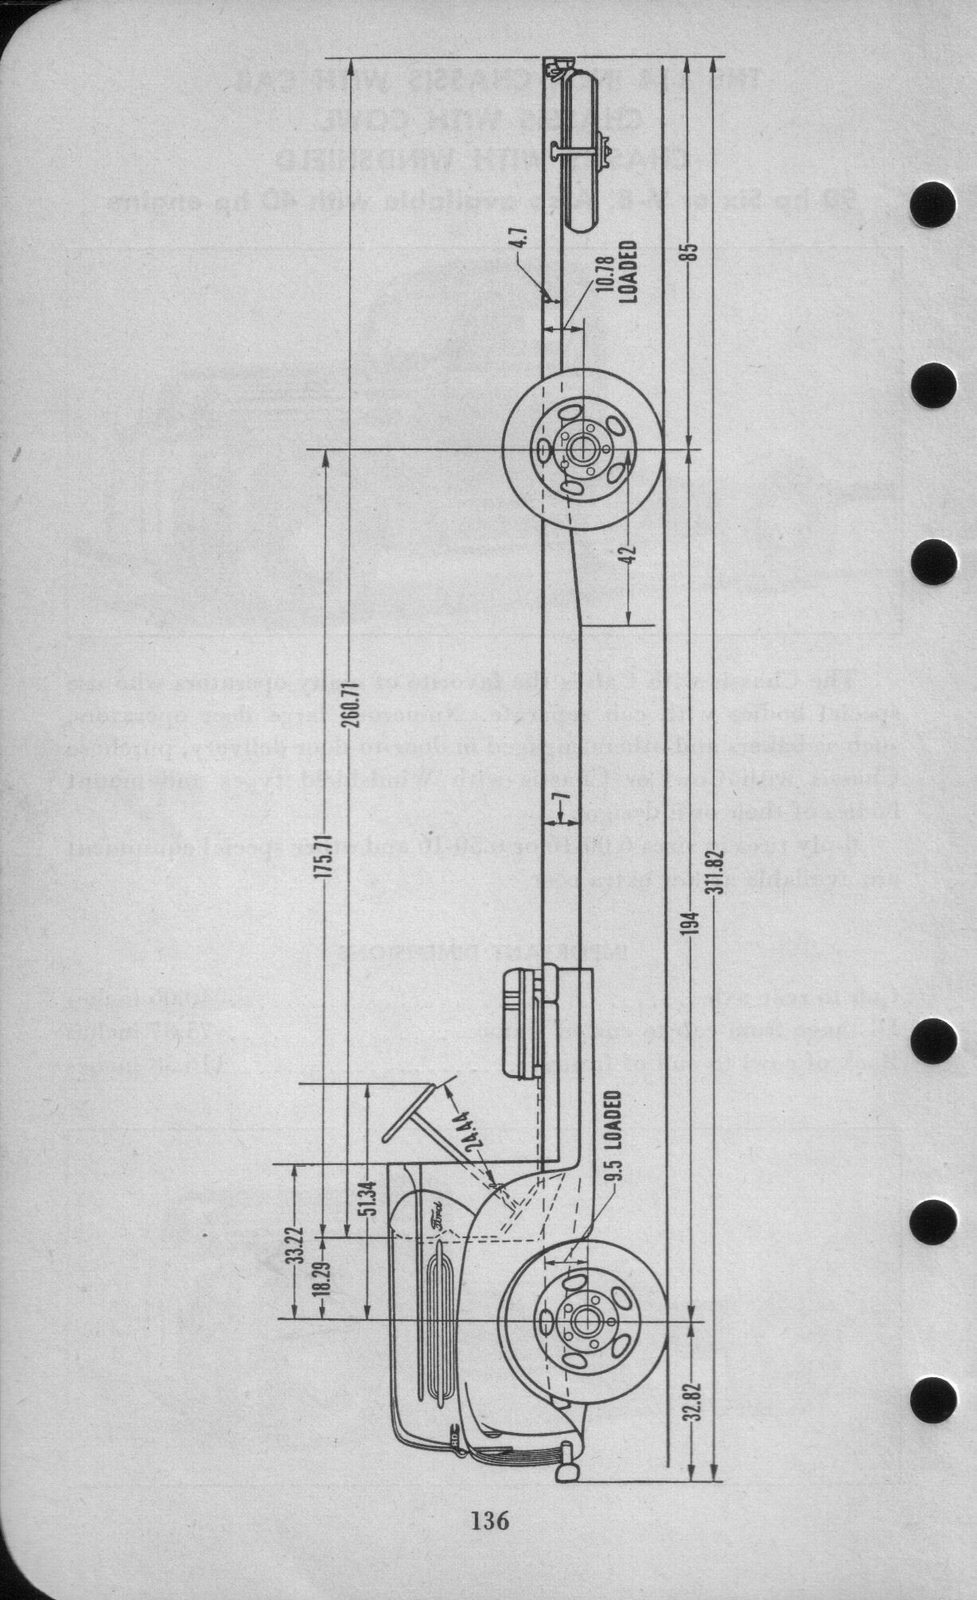 n_1942 Ford Salesmans Reference Manual-136.jpg